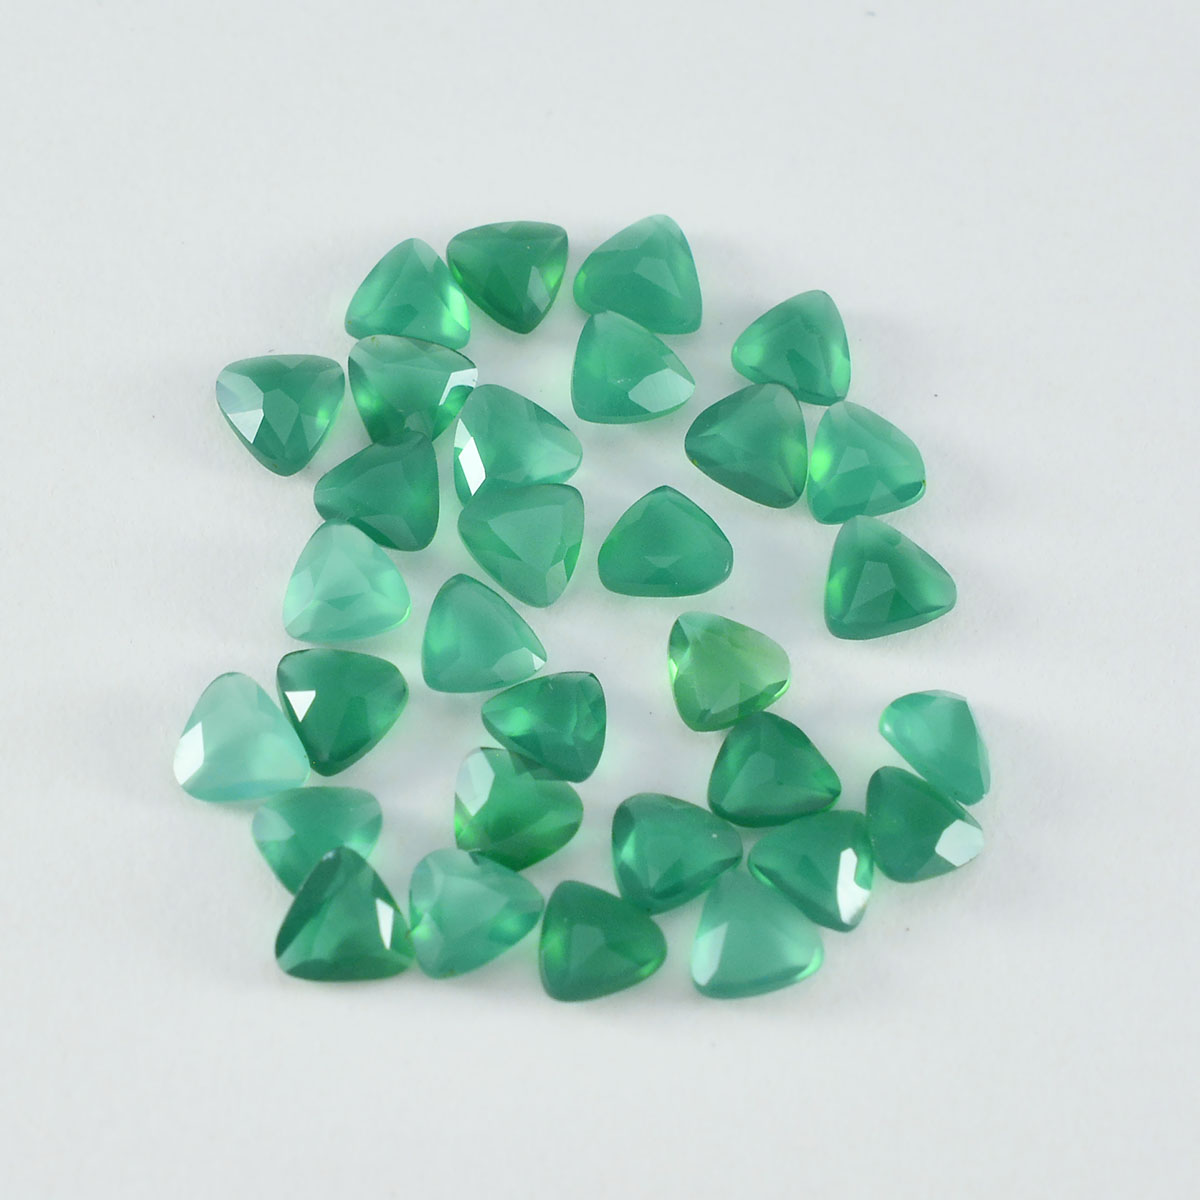 Riyogems 1 pièce d'onyx vert véritable à facettes 7x7mm en forme de trillion, gemme de qualité surprenante